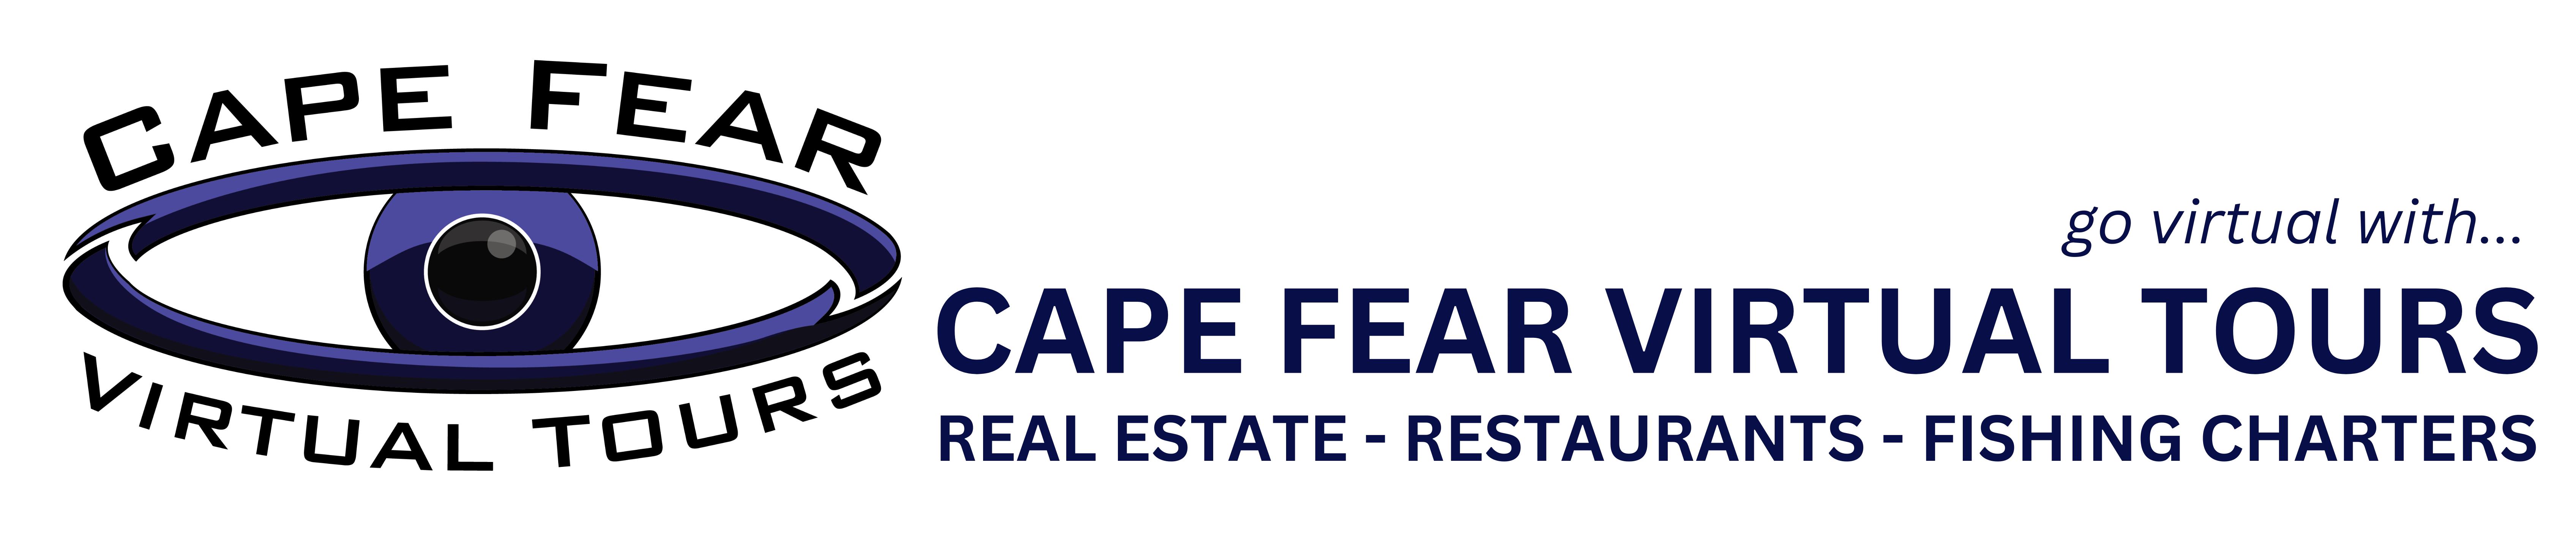 Cape fear virtual tours